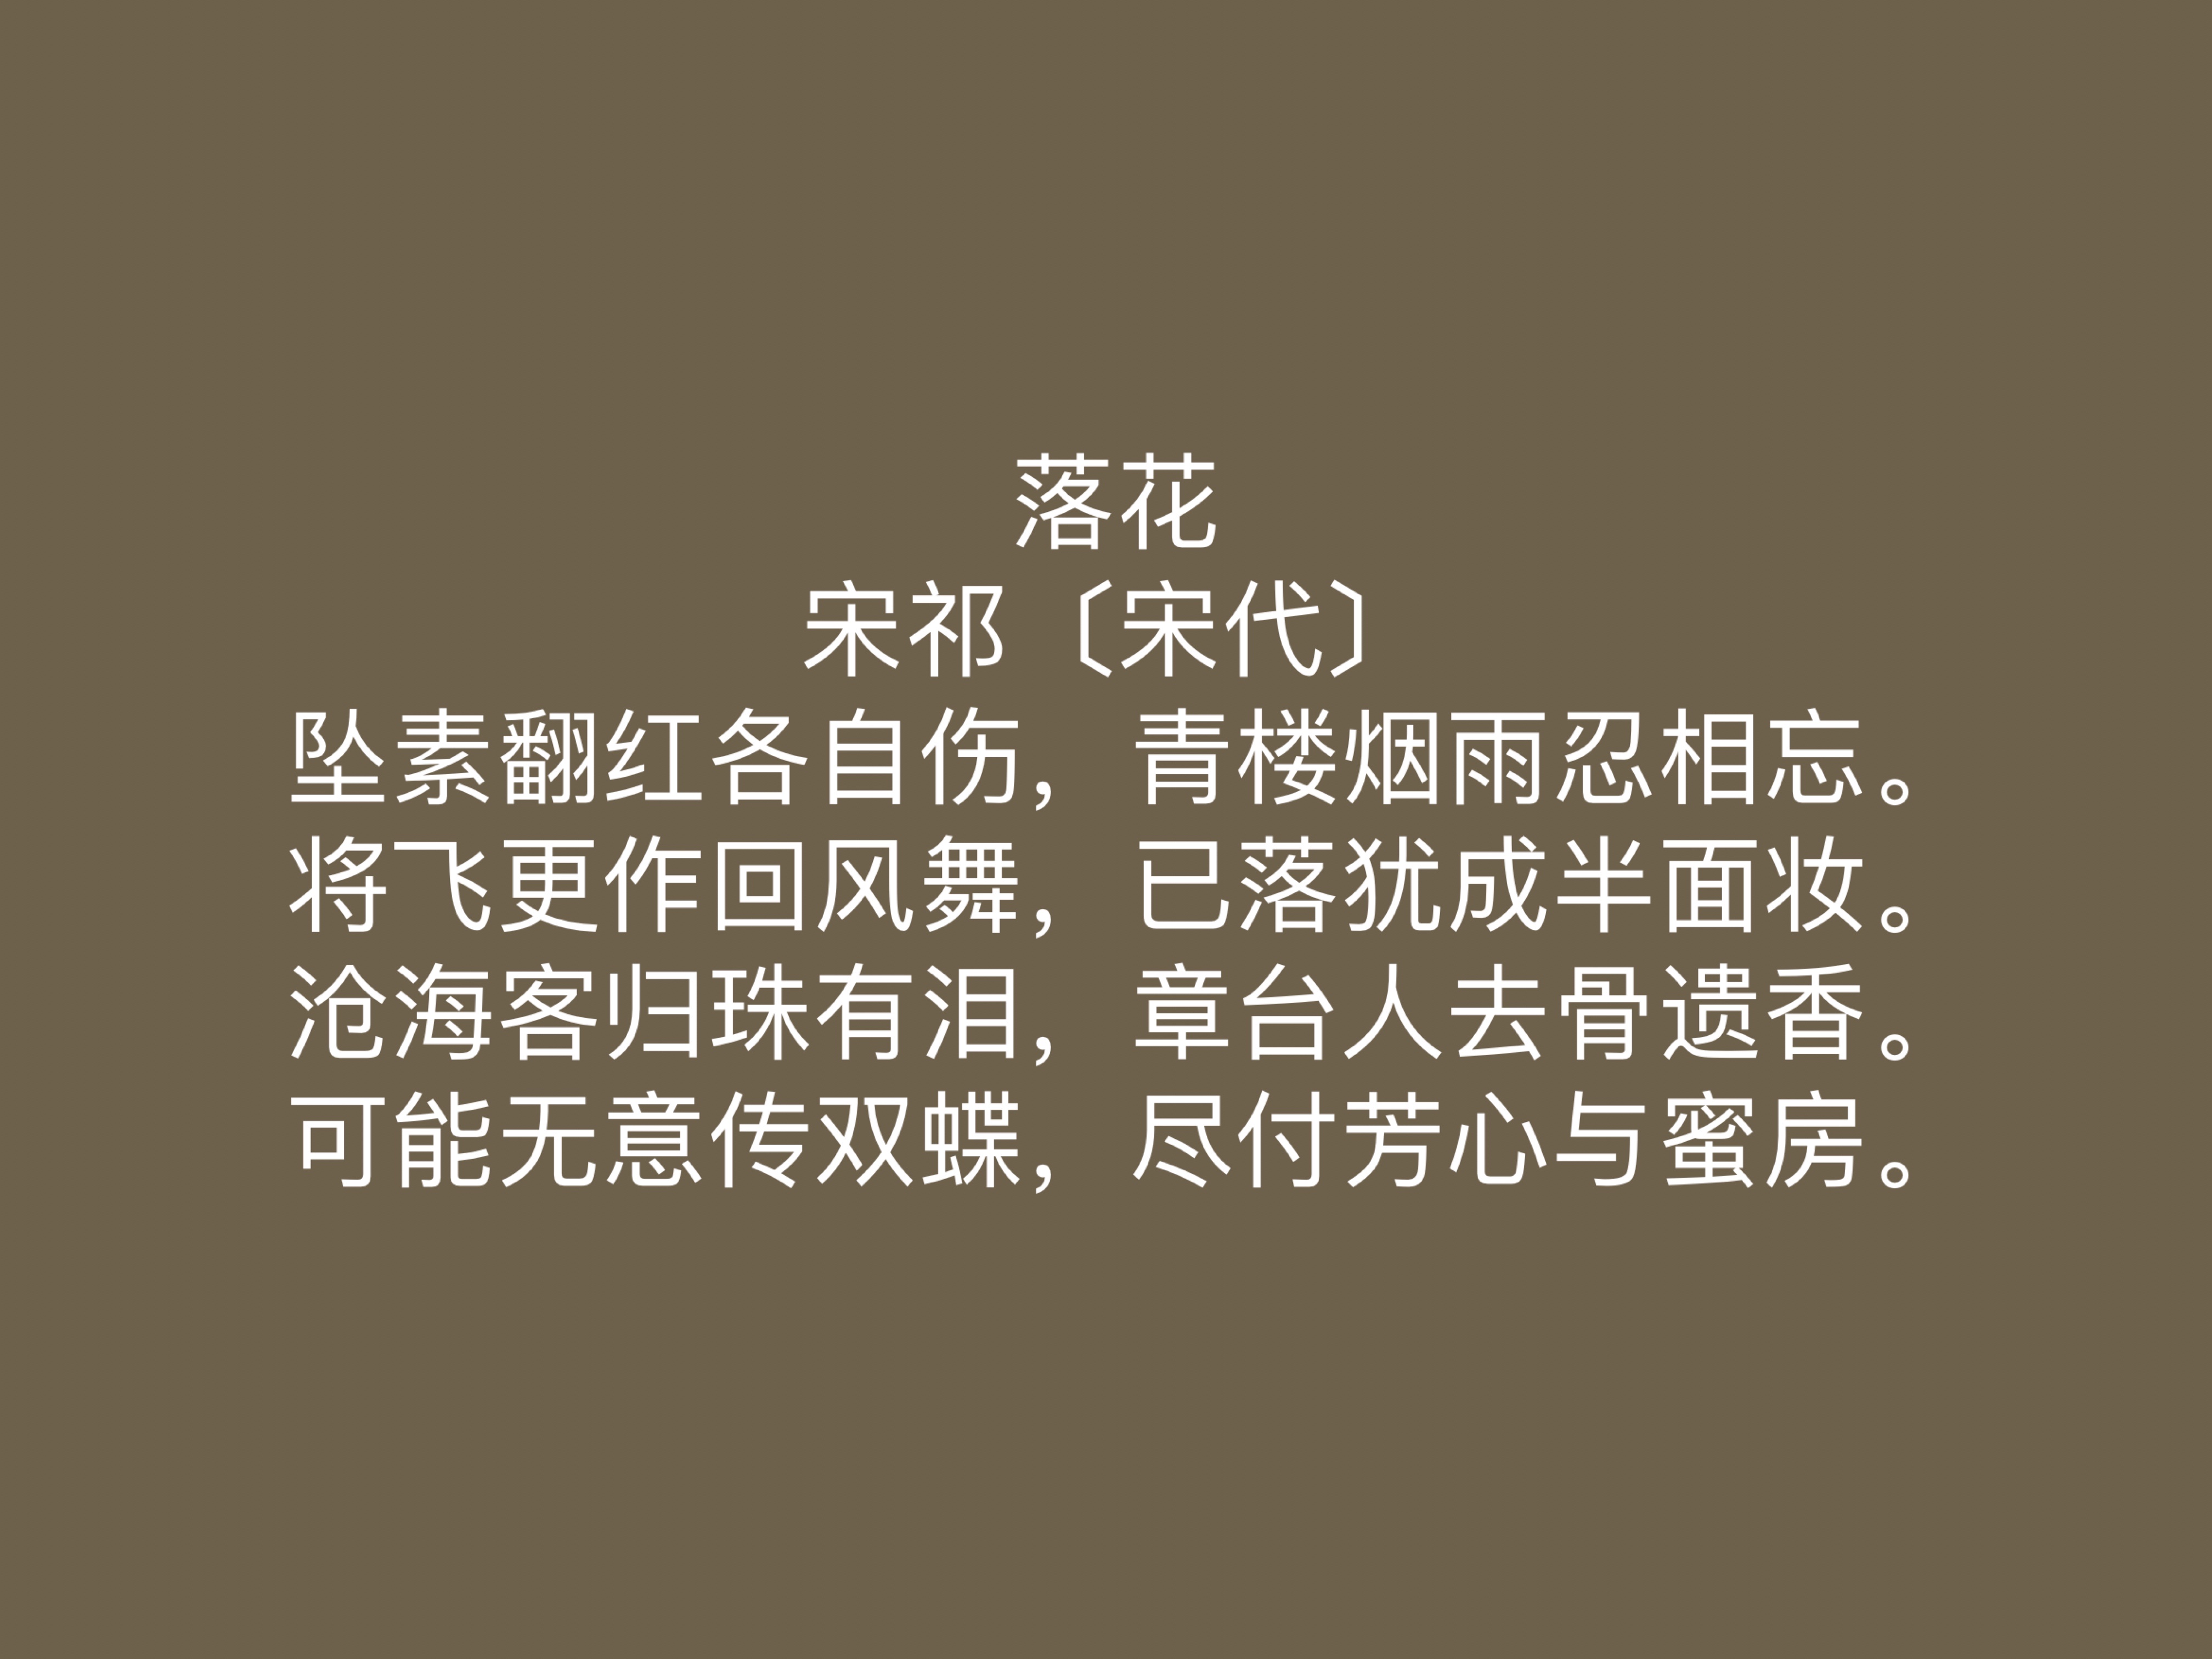 宋朝小众诗人宋祁,尤其擅长描写春天,他这十首诗作充满无限生机